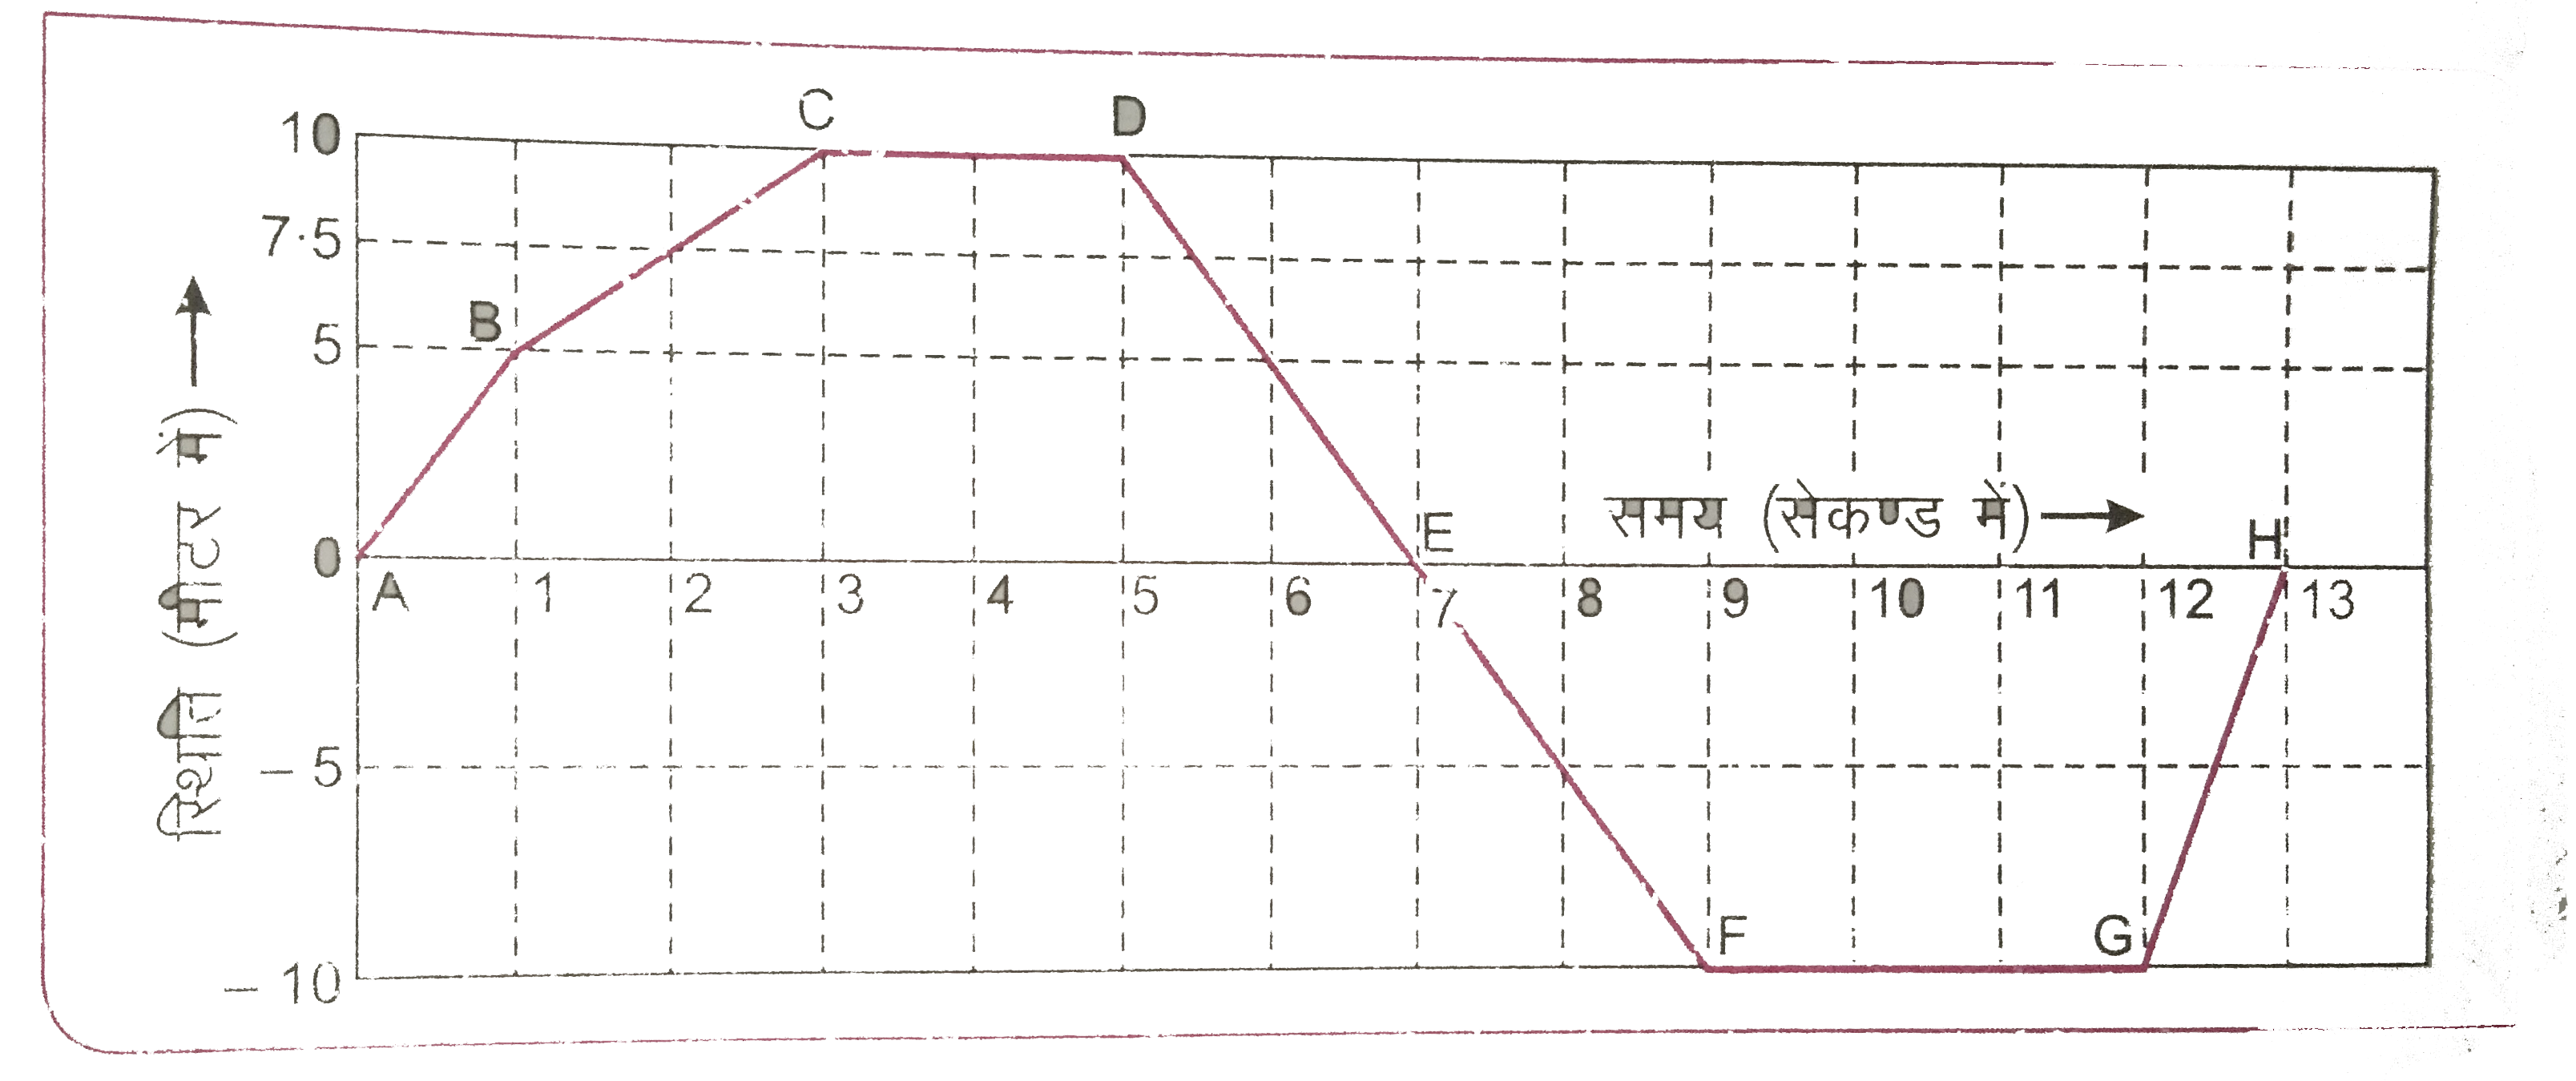 चित्र 3.24 में एक साइकिल सवार का स्थिति - समय ग्राफ दिया गया है । इस ग्राफ द्वारा ज्ञात कीजिए :   वे समय-अंतराल जिनमे साइकिल सवार विराम अवस्था में है ।